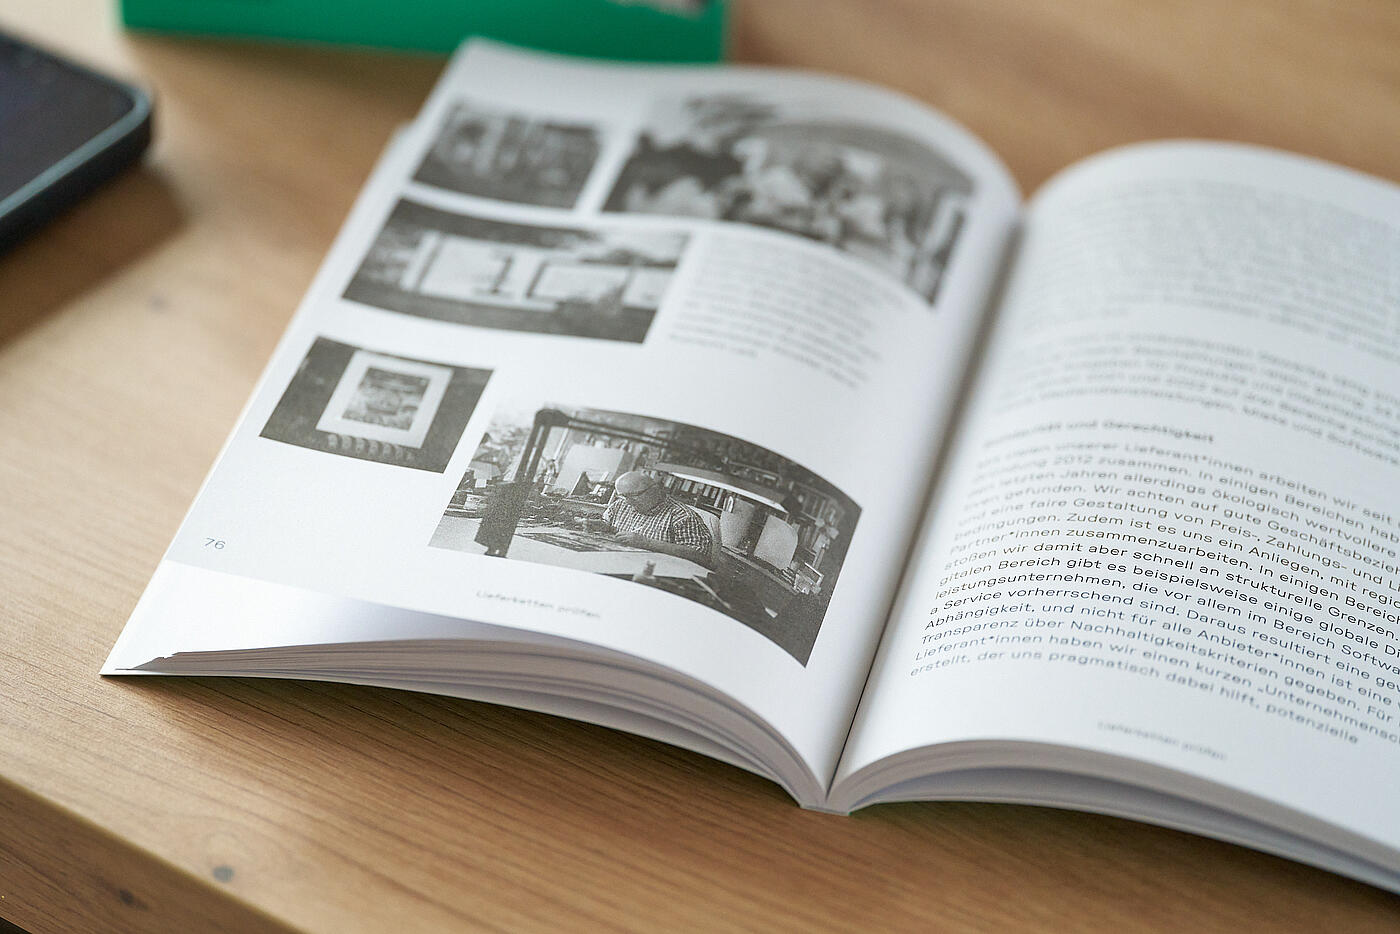 Das visuellverstehen-Buch Gemeinwohl von A-Z aufgeschlagen auf einer bebilderten Seite auf einem Tisch.